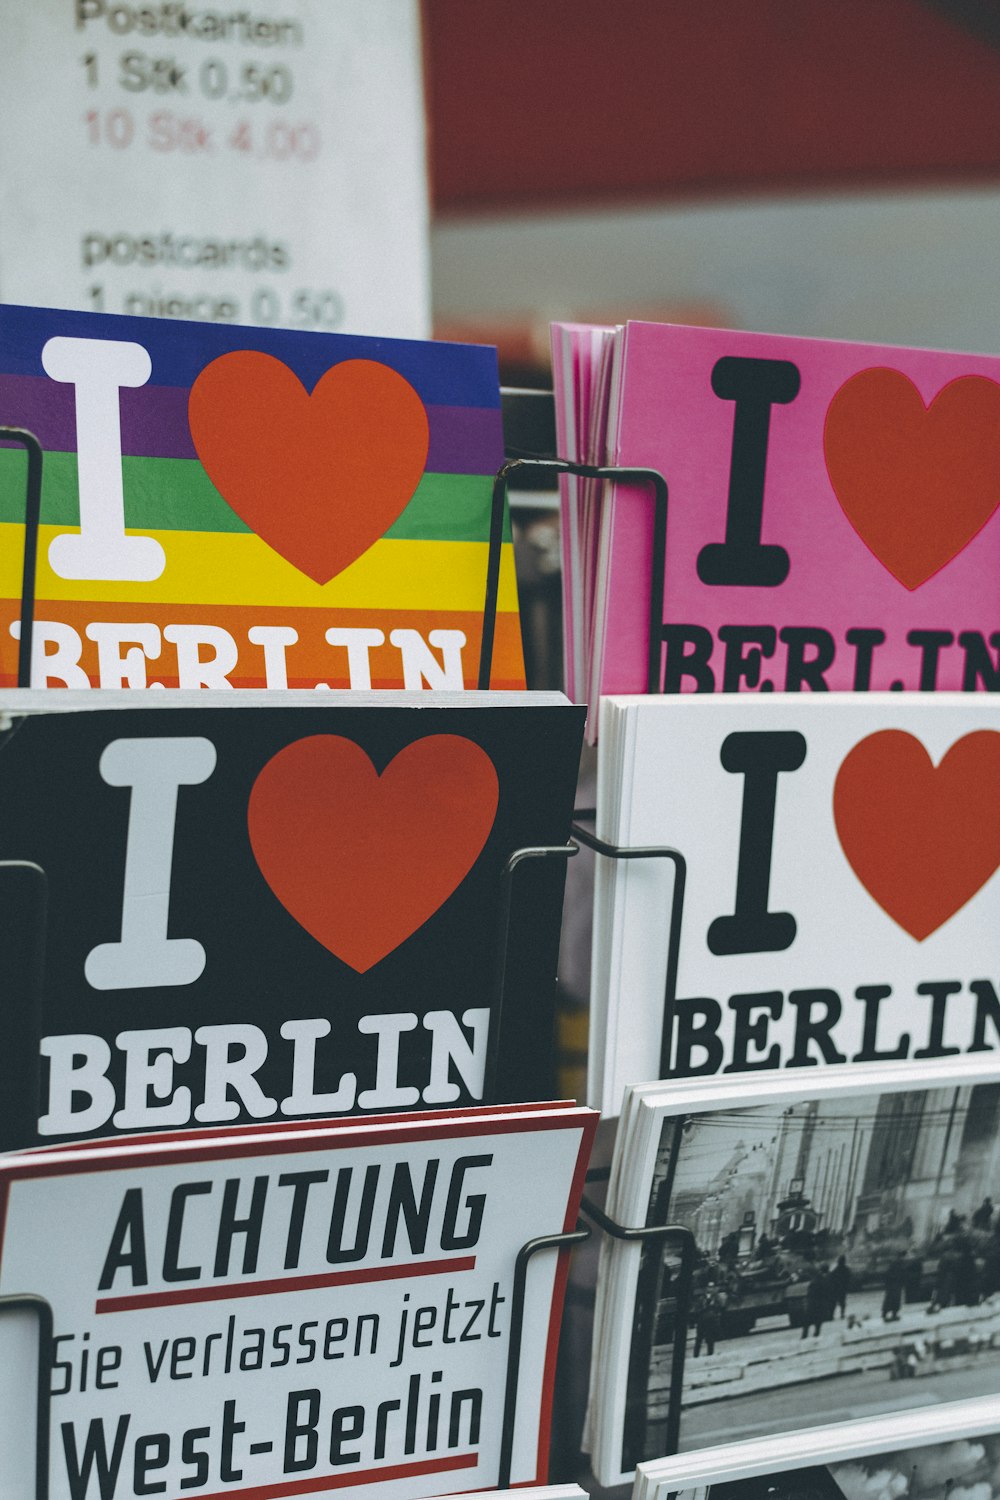 Me encantan los libros de Berlín